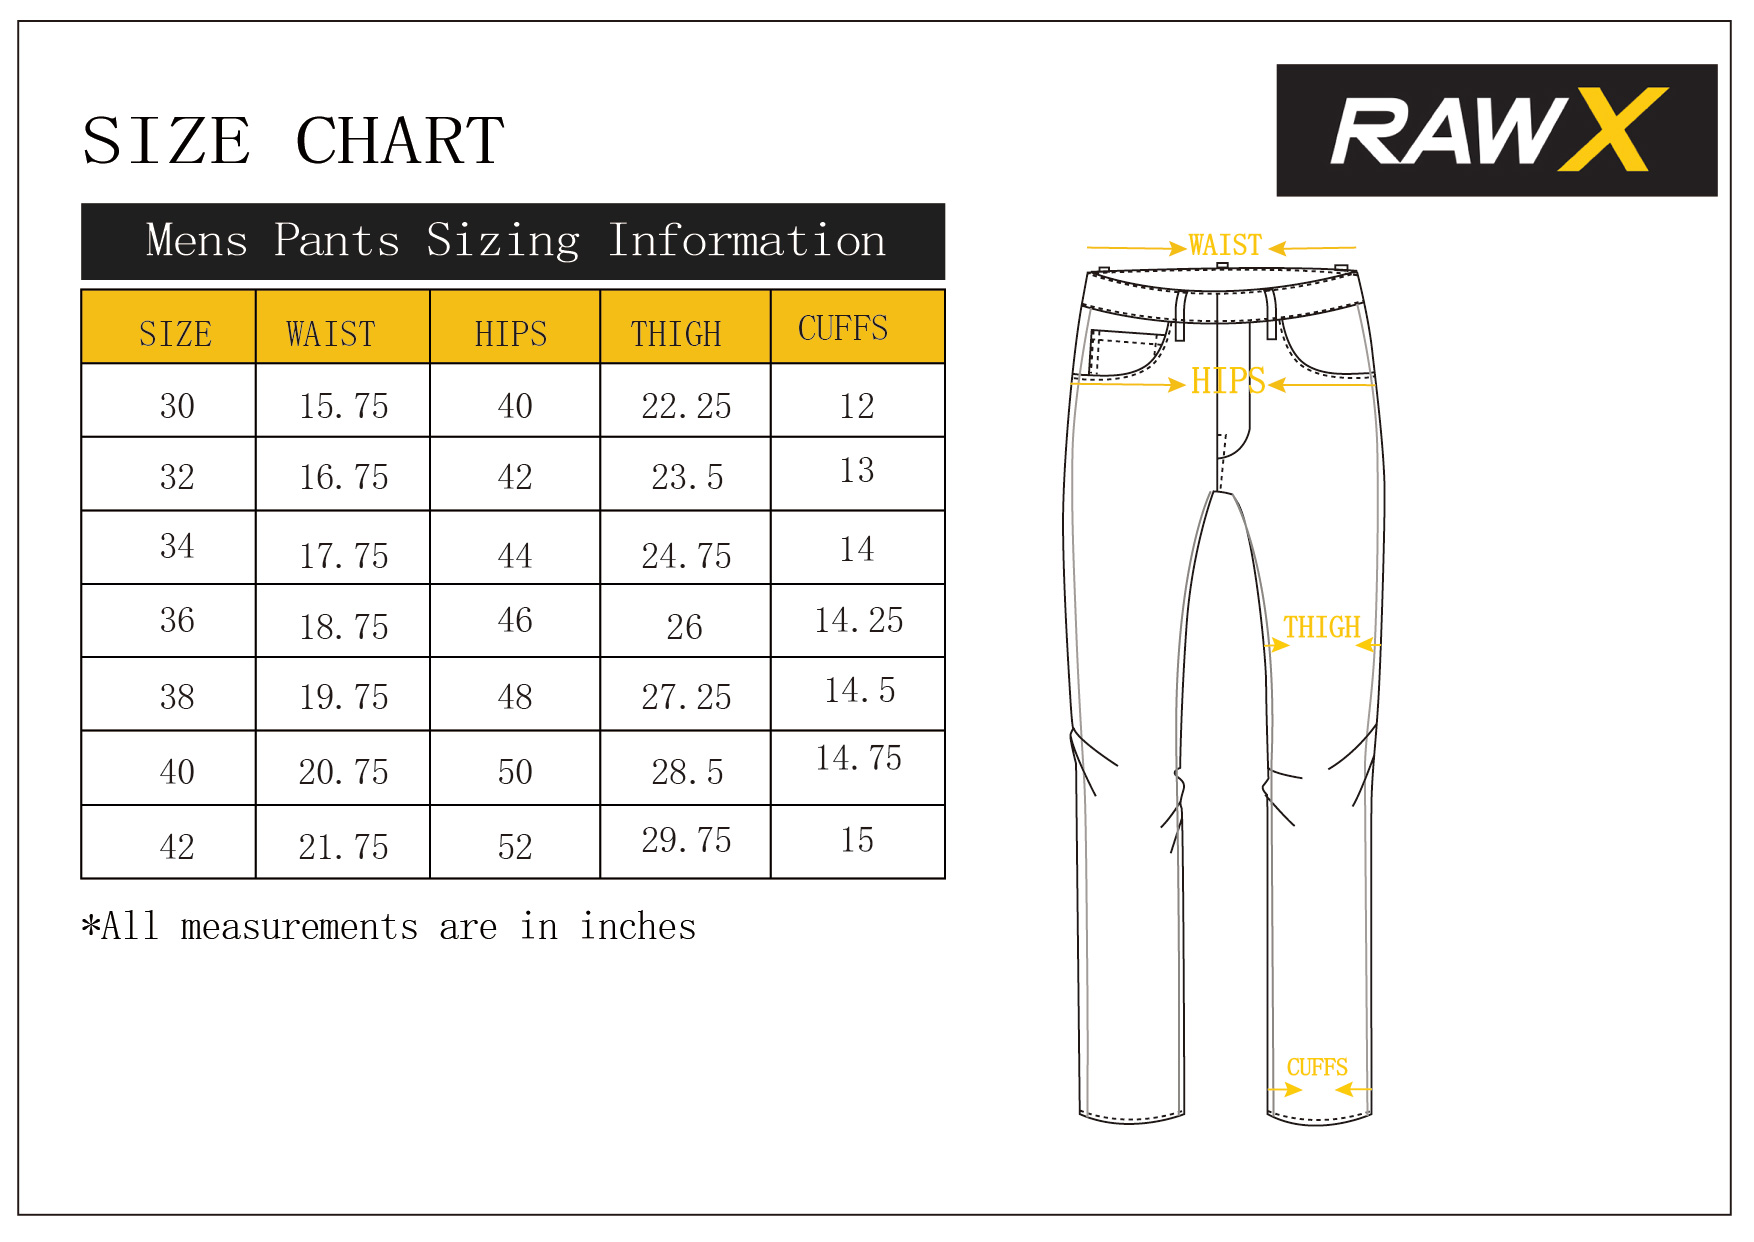 RAW X Men's Slim Fit Skinny Biker Jean, Comfy Flex Stretch Moto Wash Rip Distressed Denim Jeans Pants - image 5 of 8